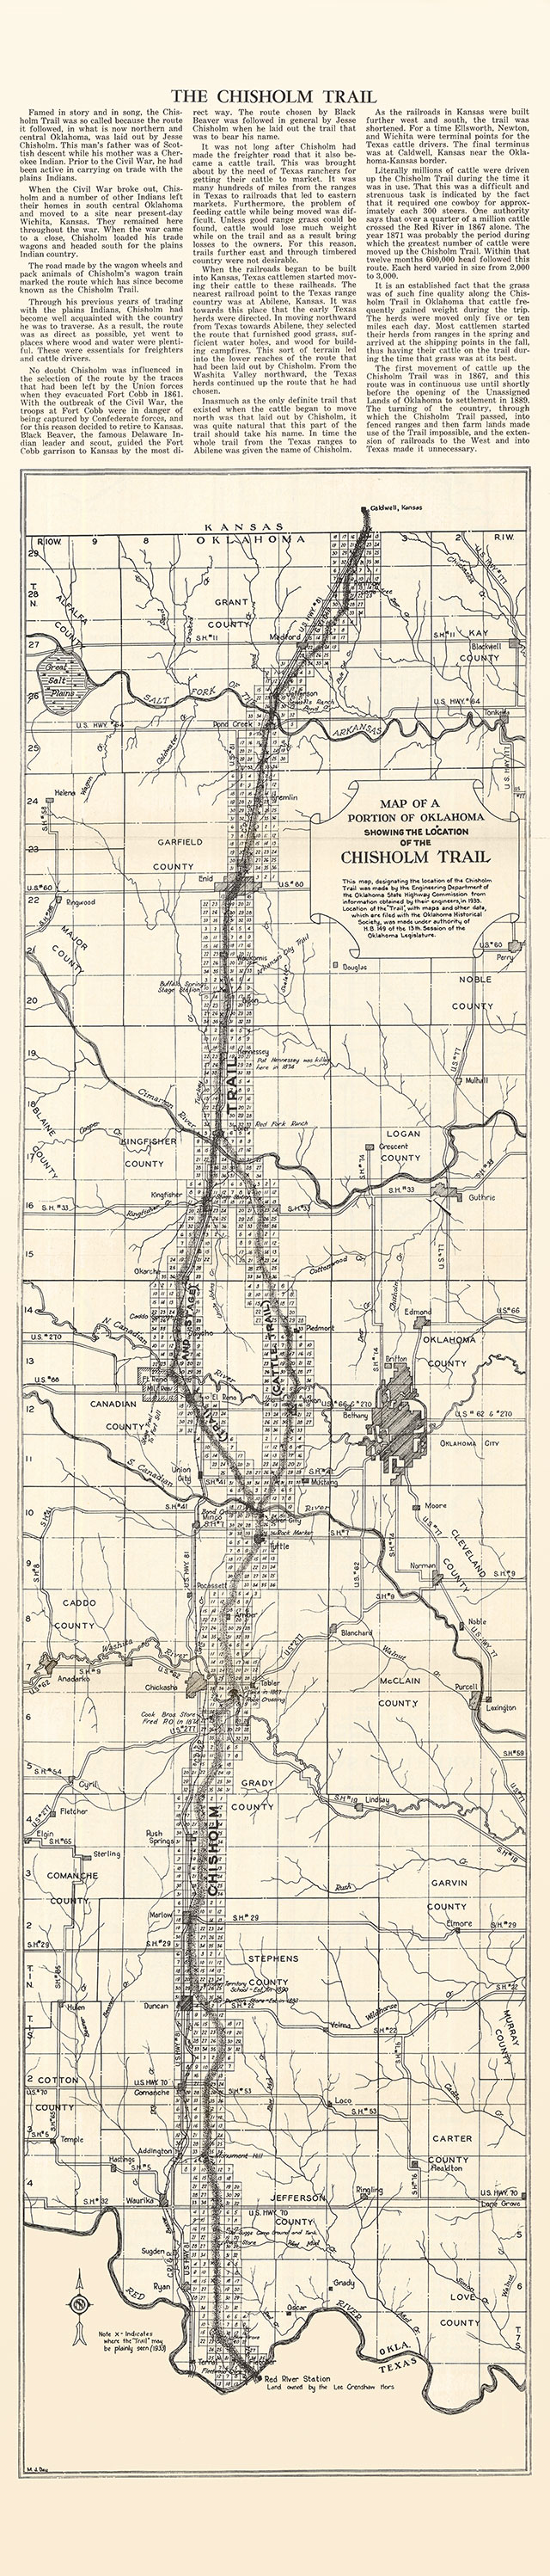 Chisholm Trail Map